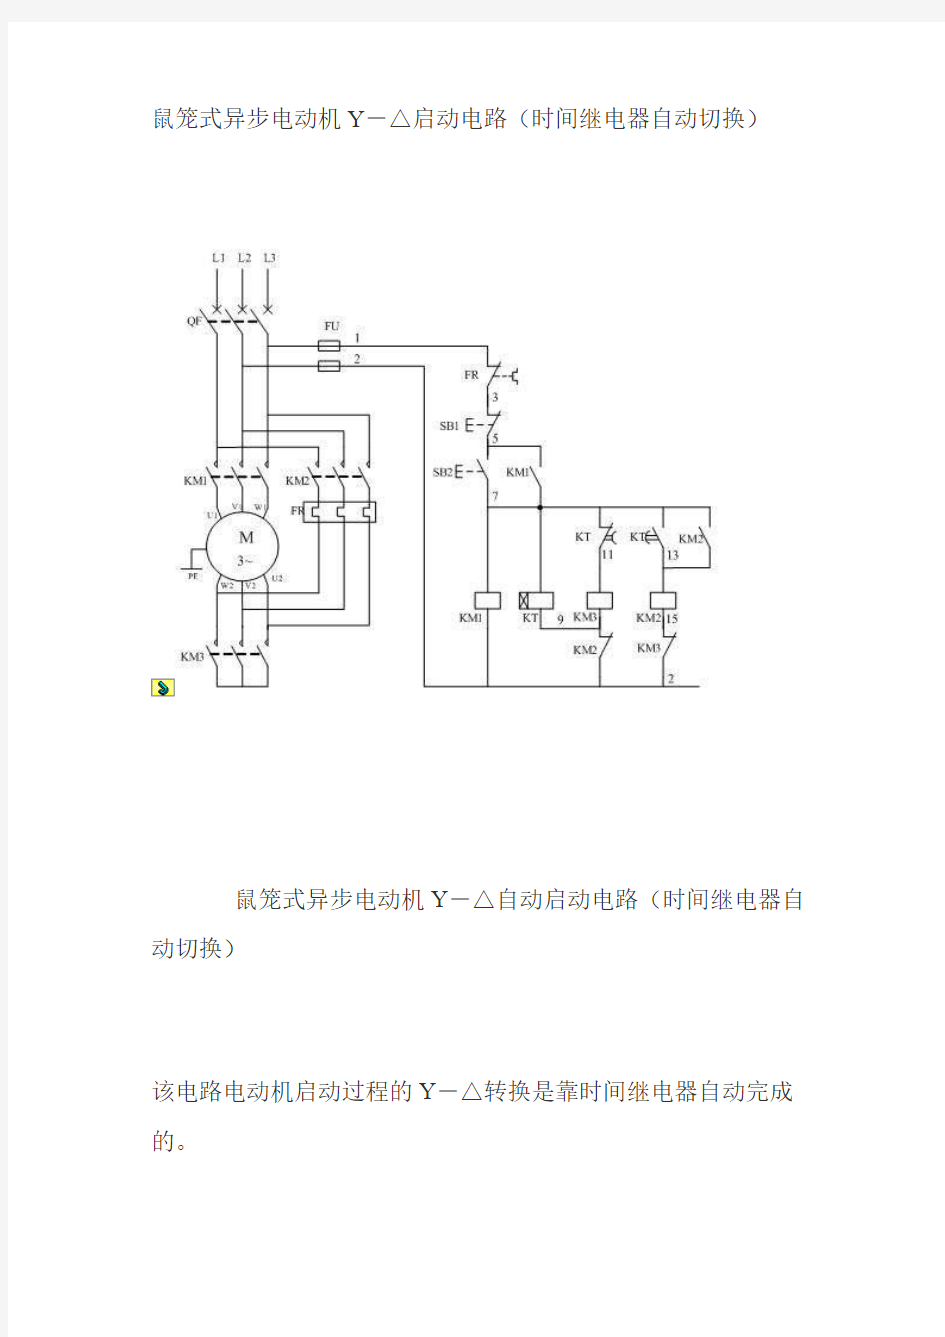 鼠笼式异步电动机Y-△启动电路(组图)